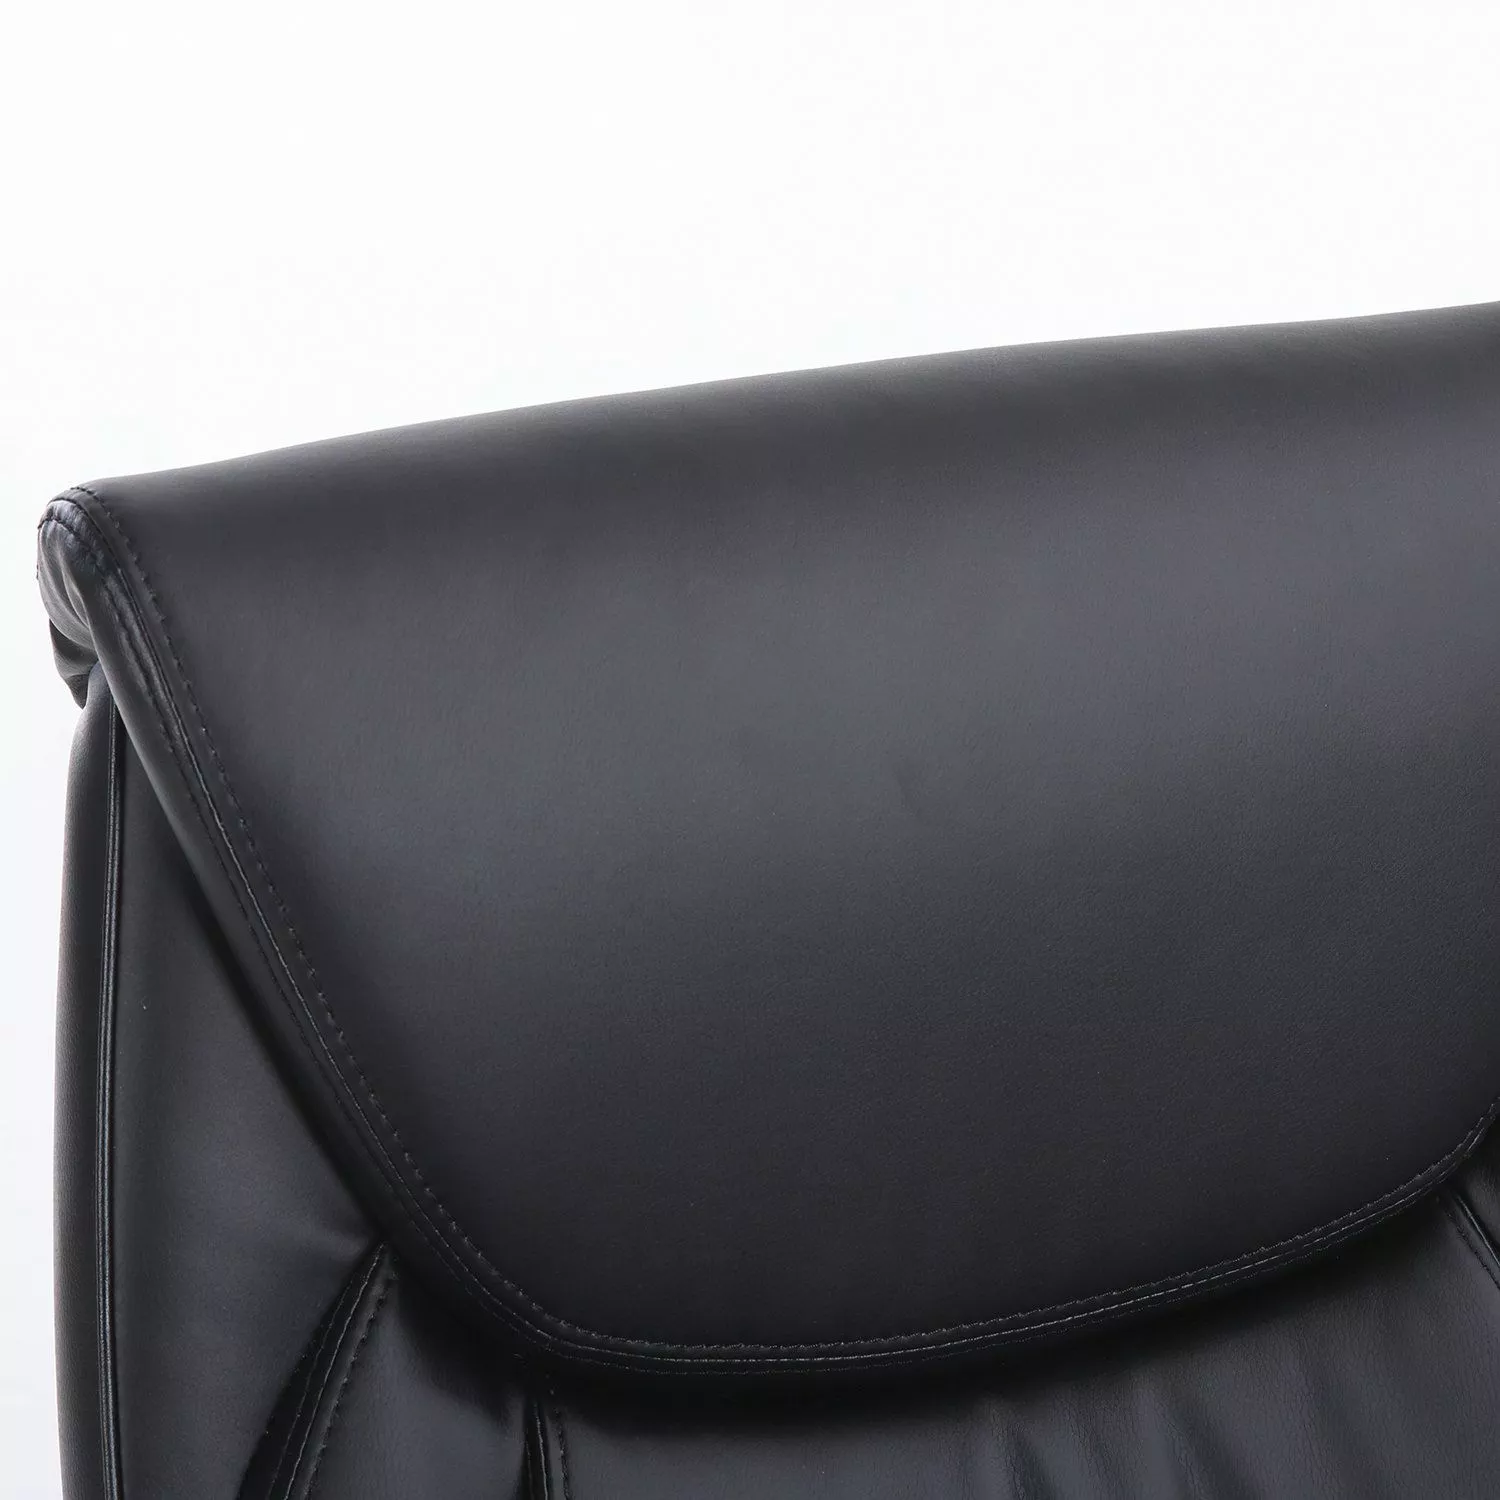 Кресло компьютерное для руководителя BRABIX PREMIUM Advance EX-575 Черный 531825